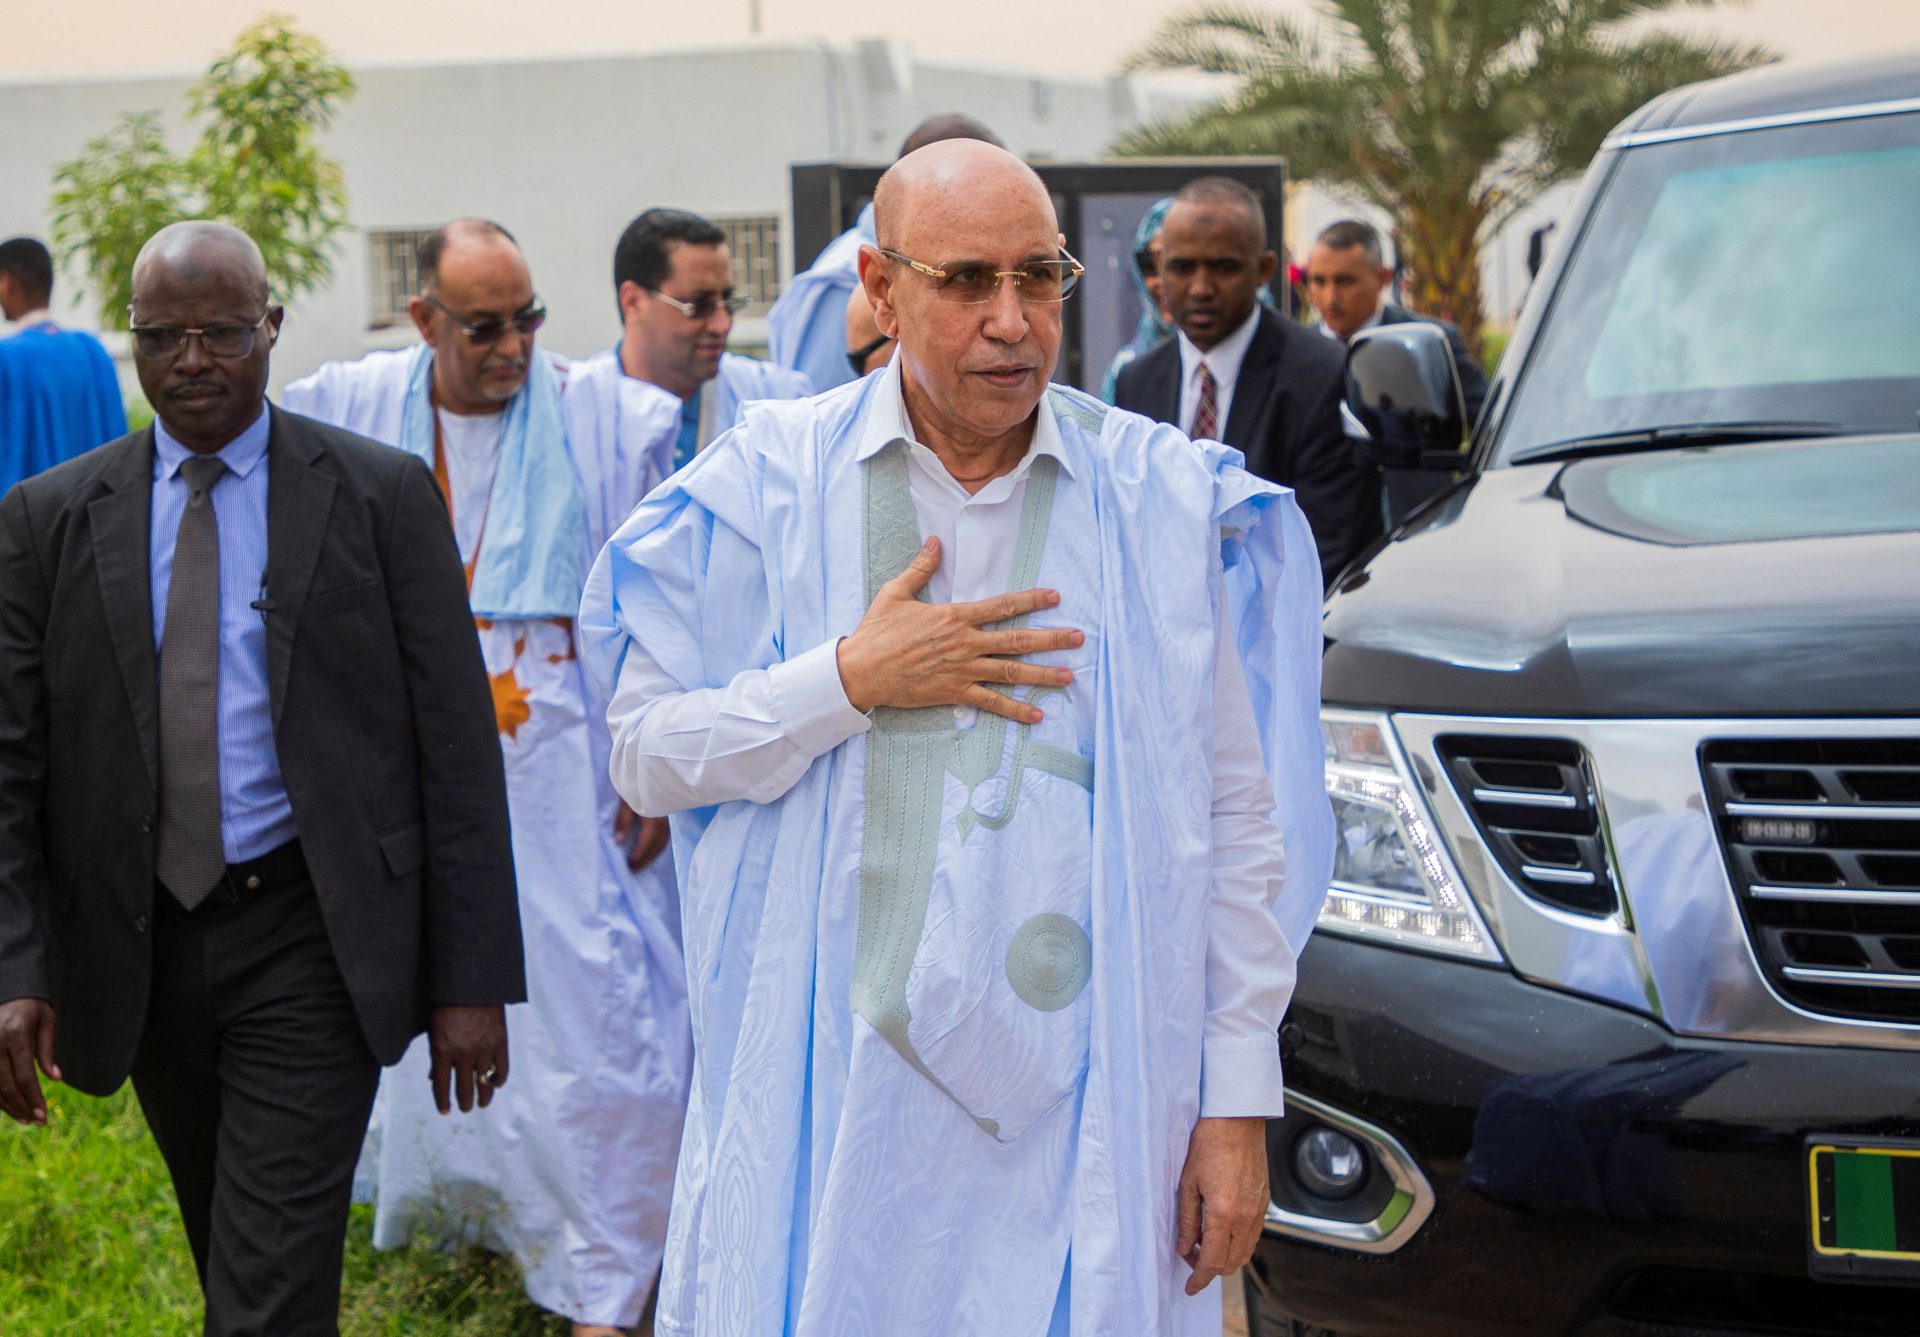 Dépouillement en cours Présidentielles Mauritanie Ould Ghazouani en tête